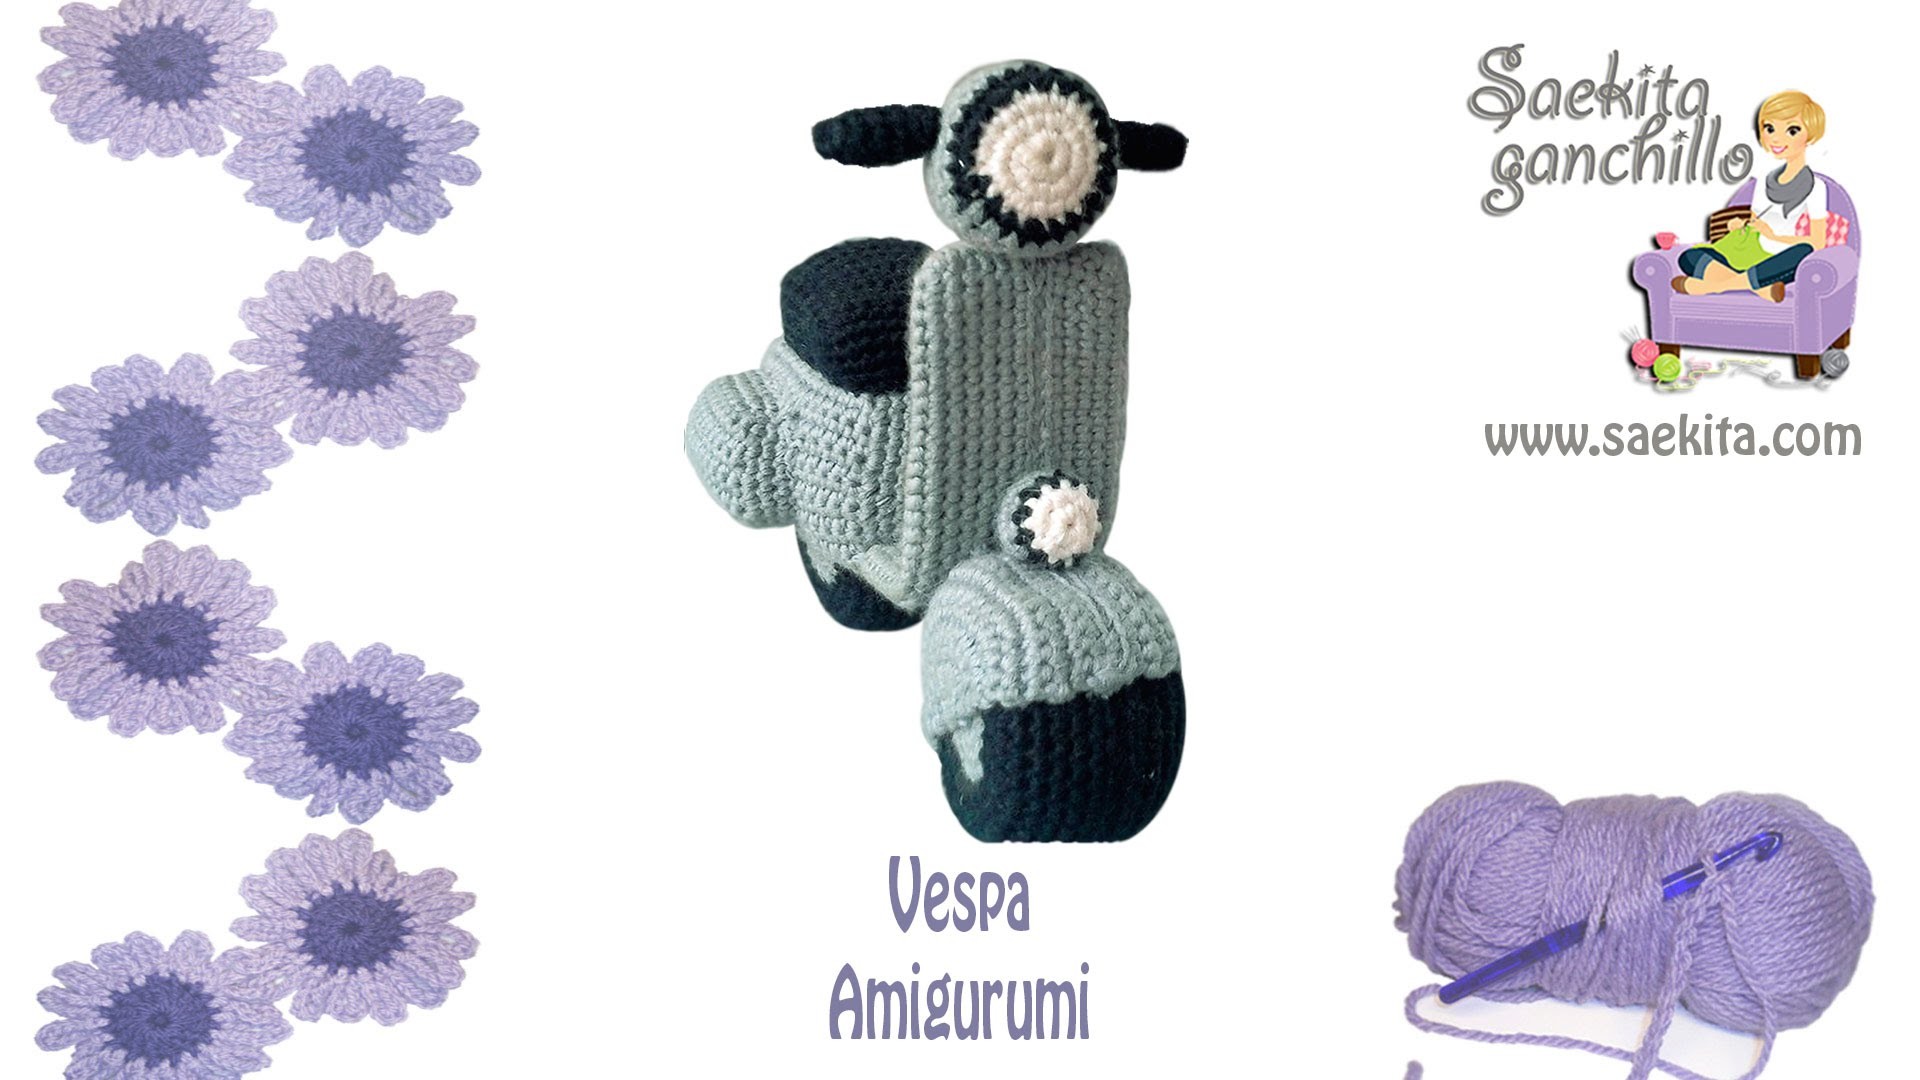 Vespa Ganchillo. Vespa Crochet * Parte 1: Chasis Vespa * Saekita Ganchillo